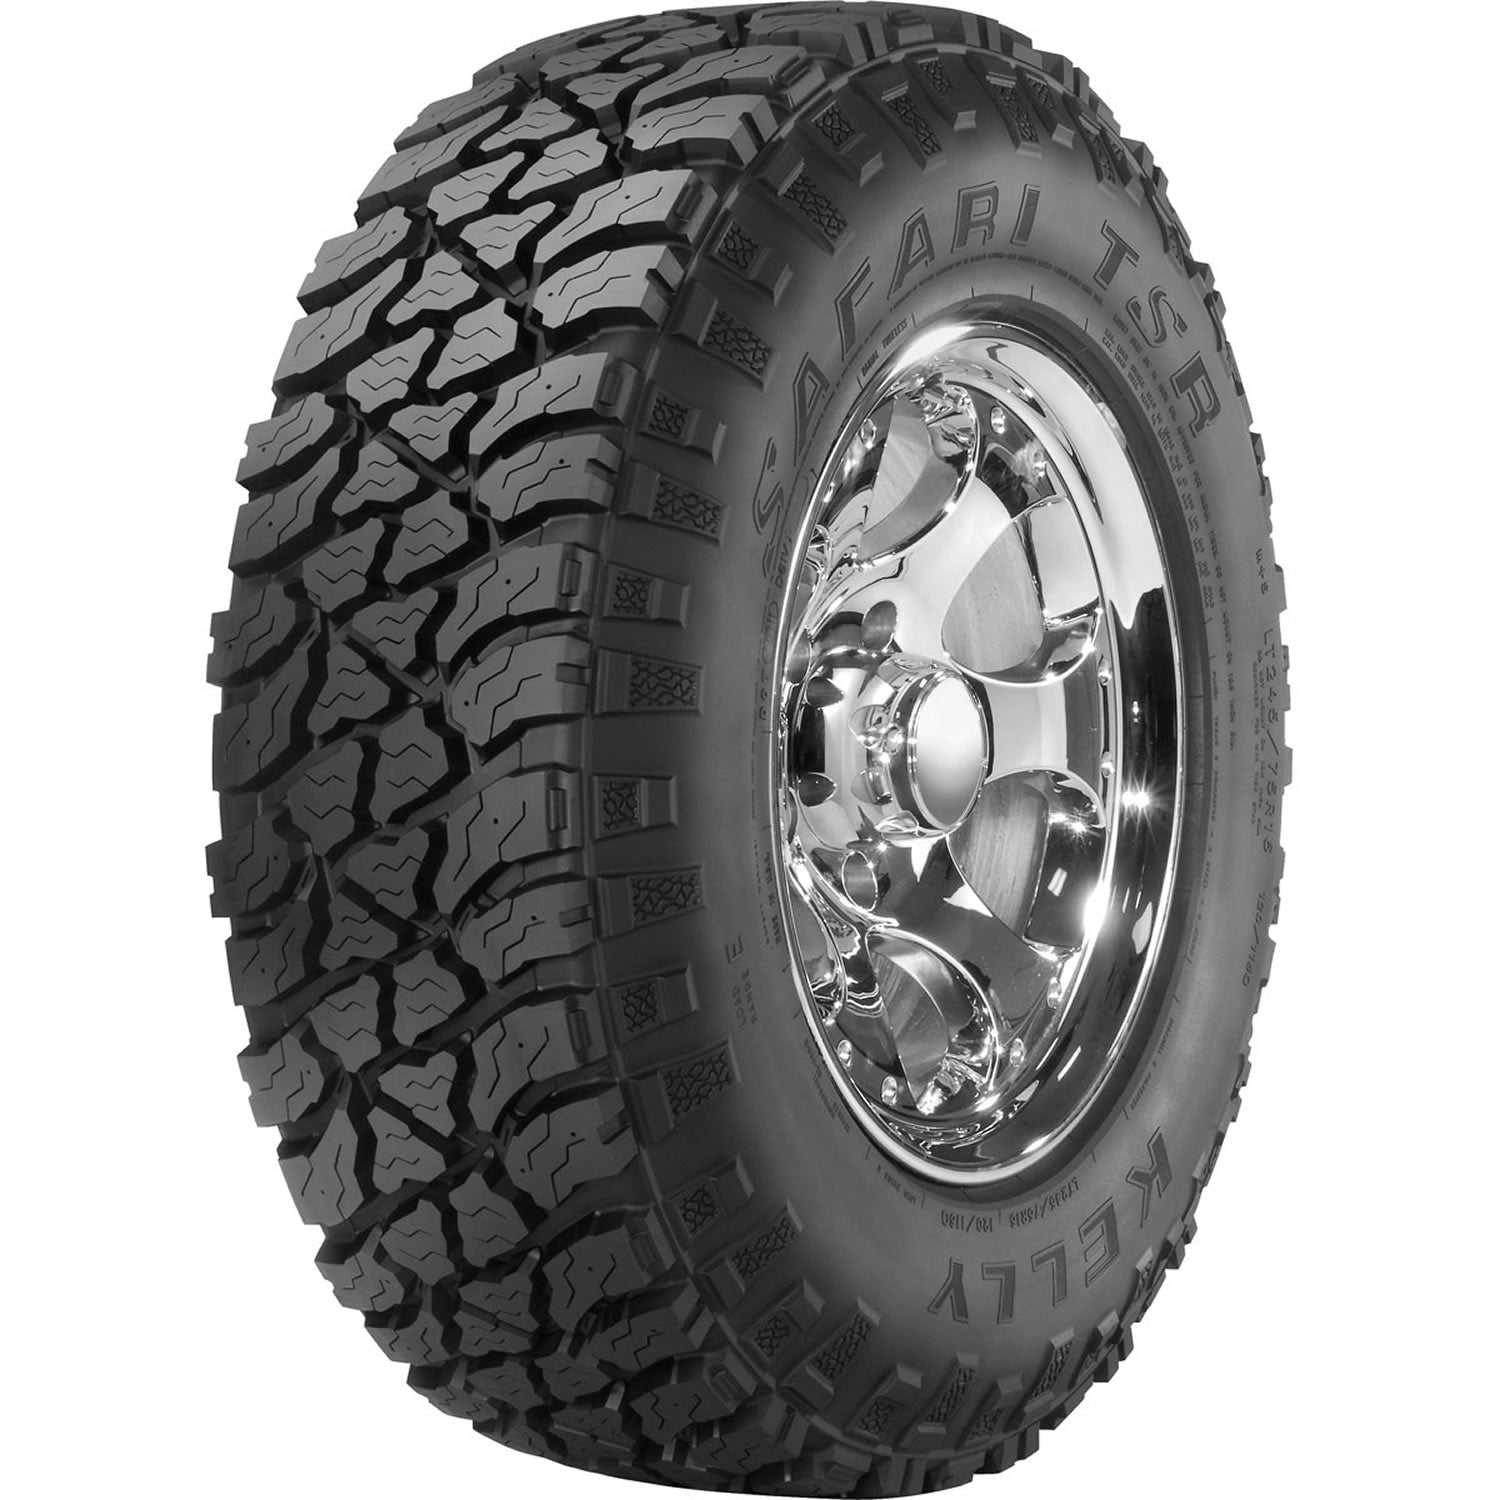 KELLY SAFARI TSR LT245/75R17 (31.7X9.8R 17) Tires